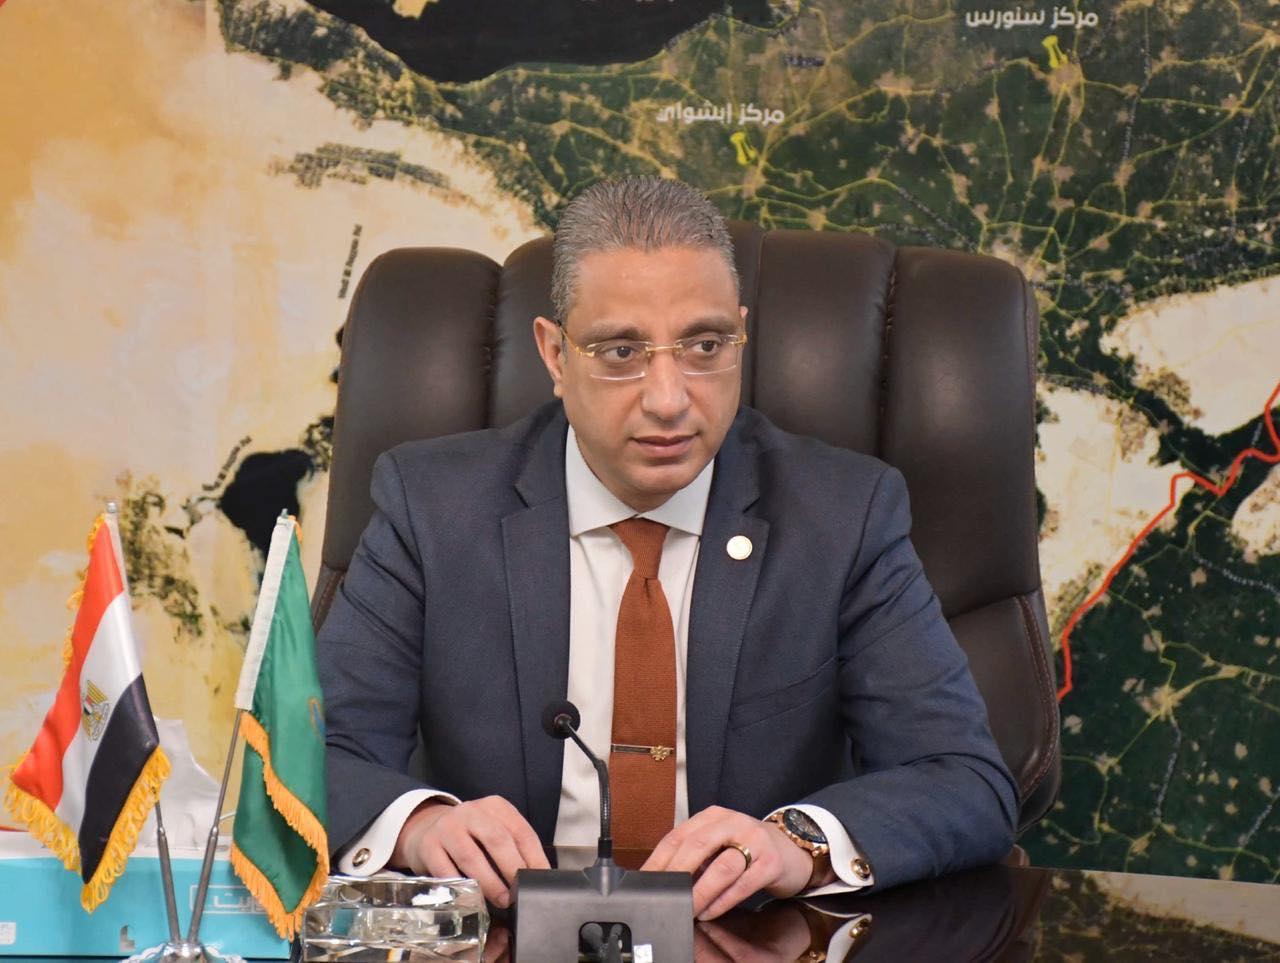   محافظة الفيوم تعلن عن فتح باب التقديم للالتحاق بالمبادرة القومية للمسئول الحكومي المحترف